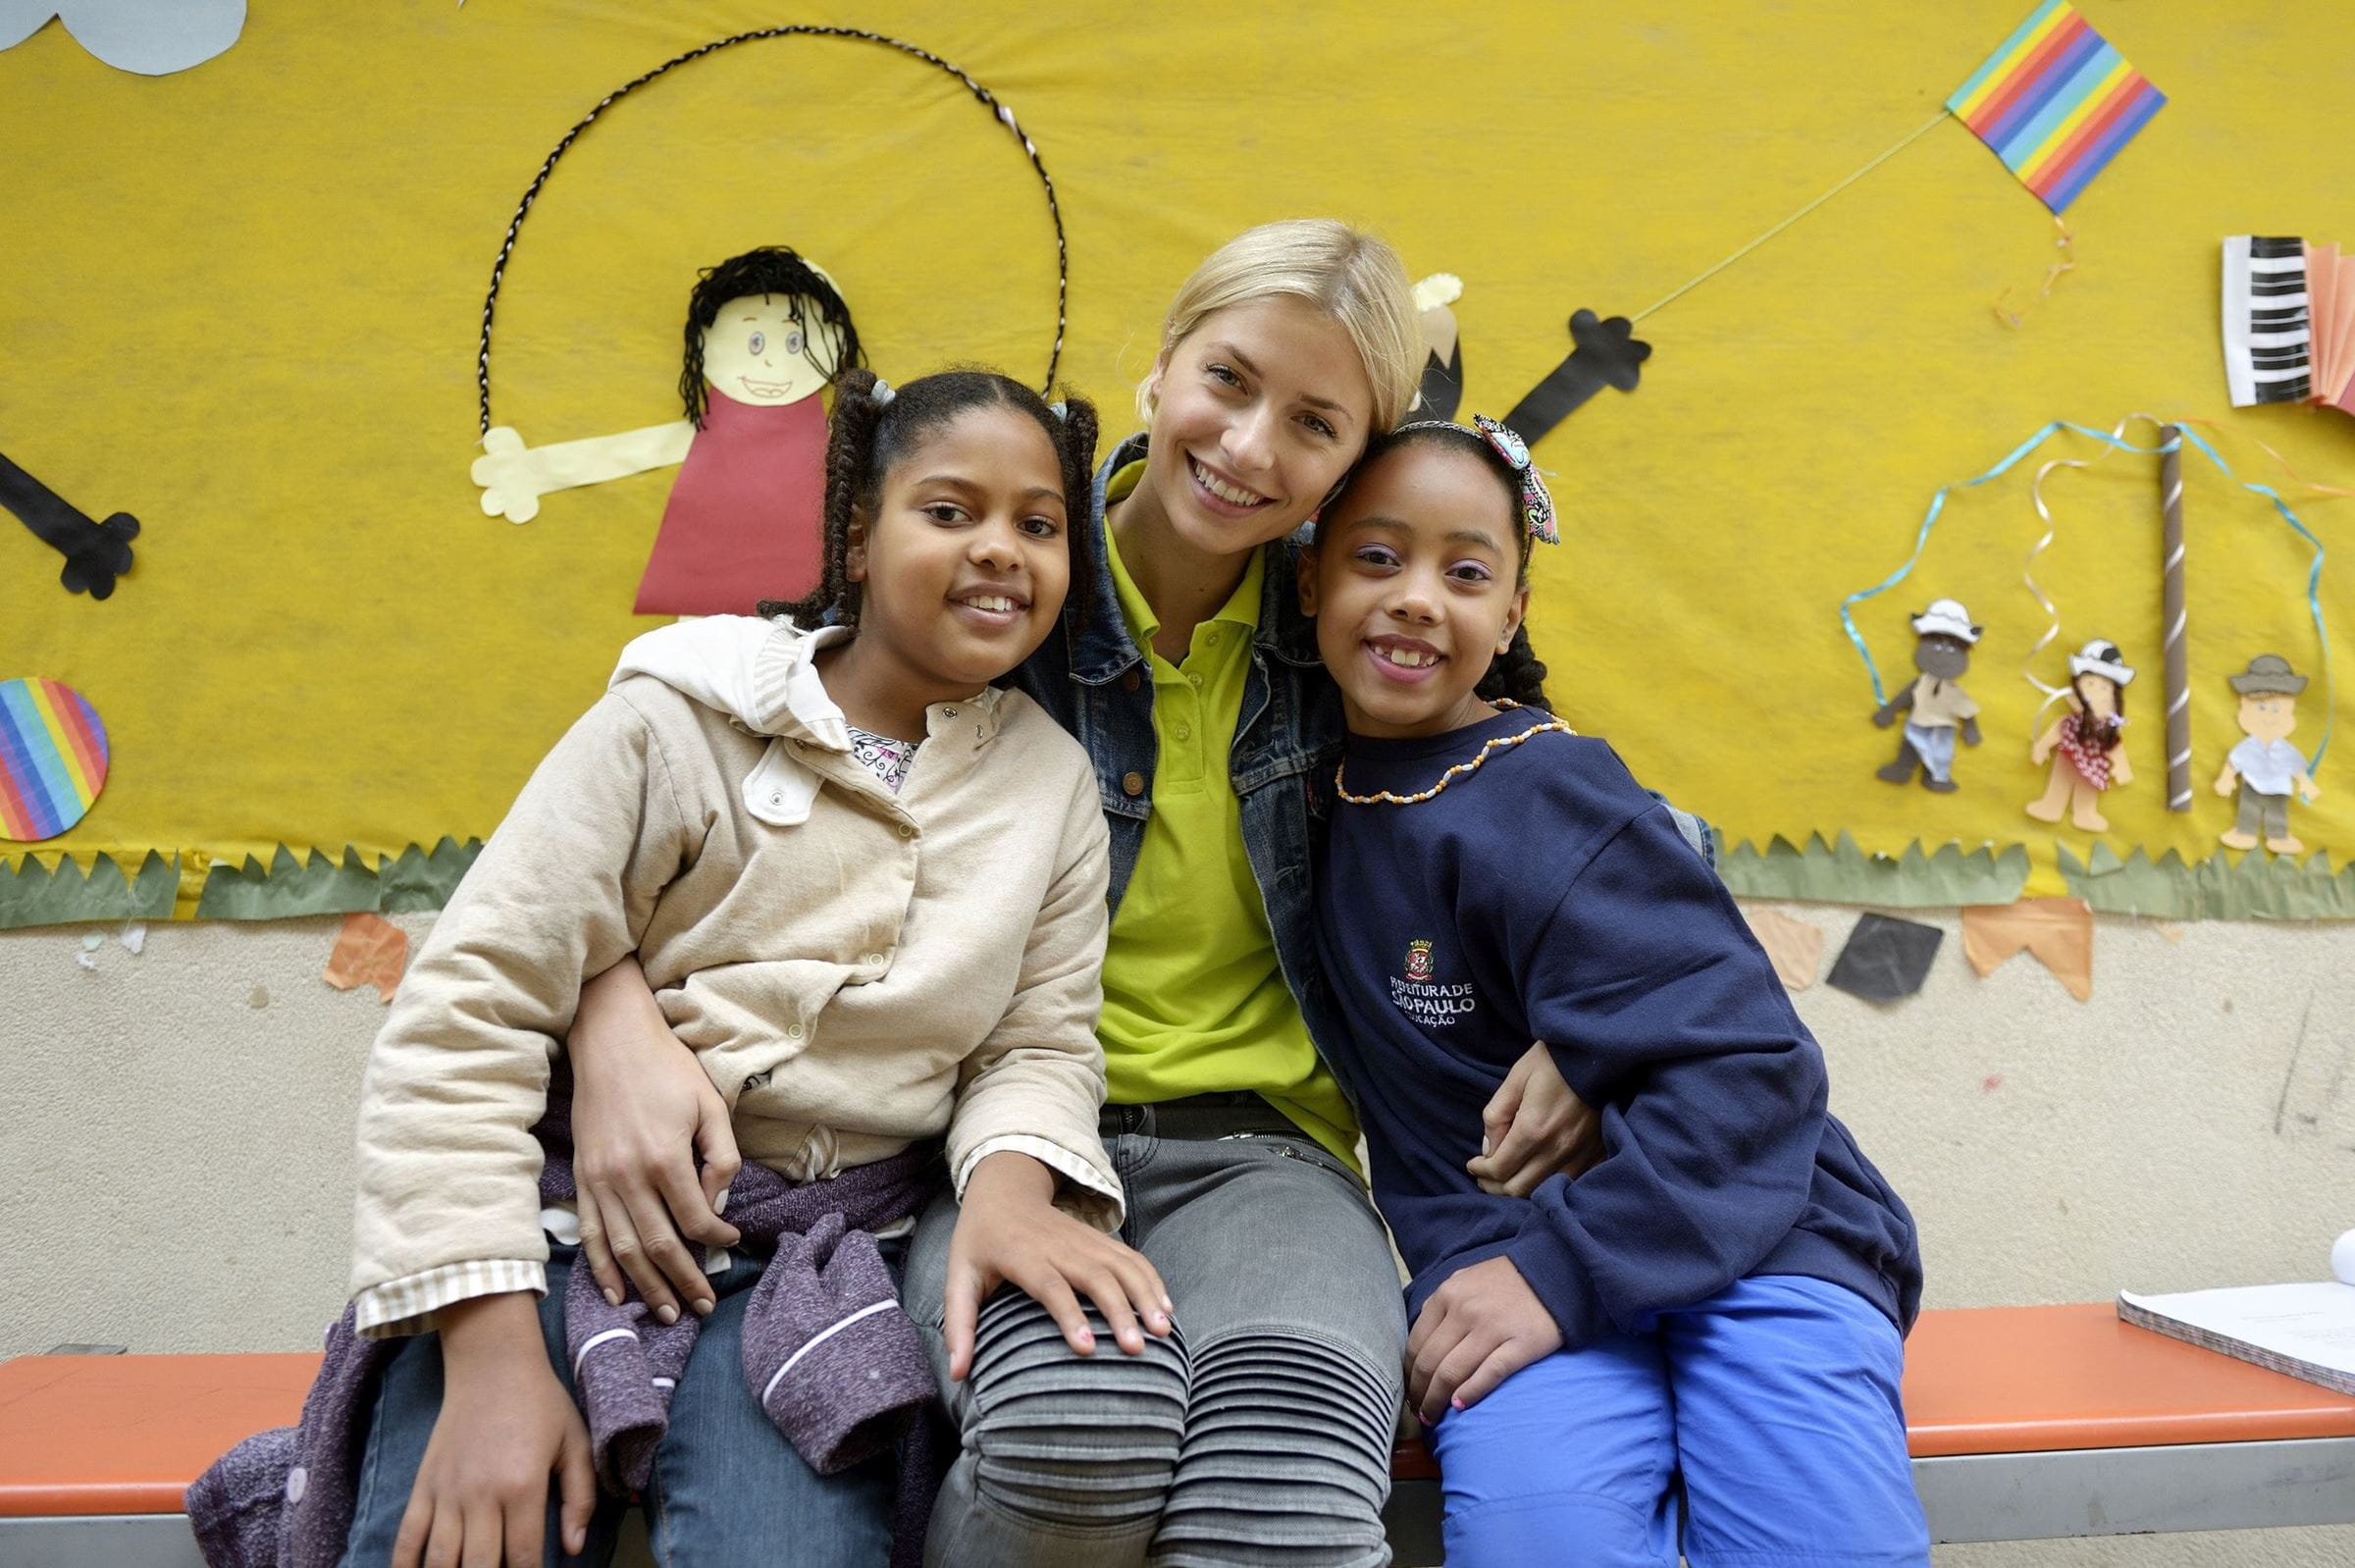 Reportage Brasilien: Lena Gercke und zwei Mädchen lächeln in die Kamera (Quelle: Florian Kopp / Kindernothilfe)